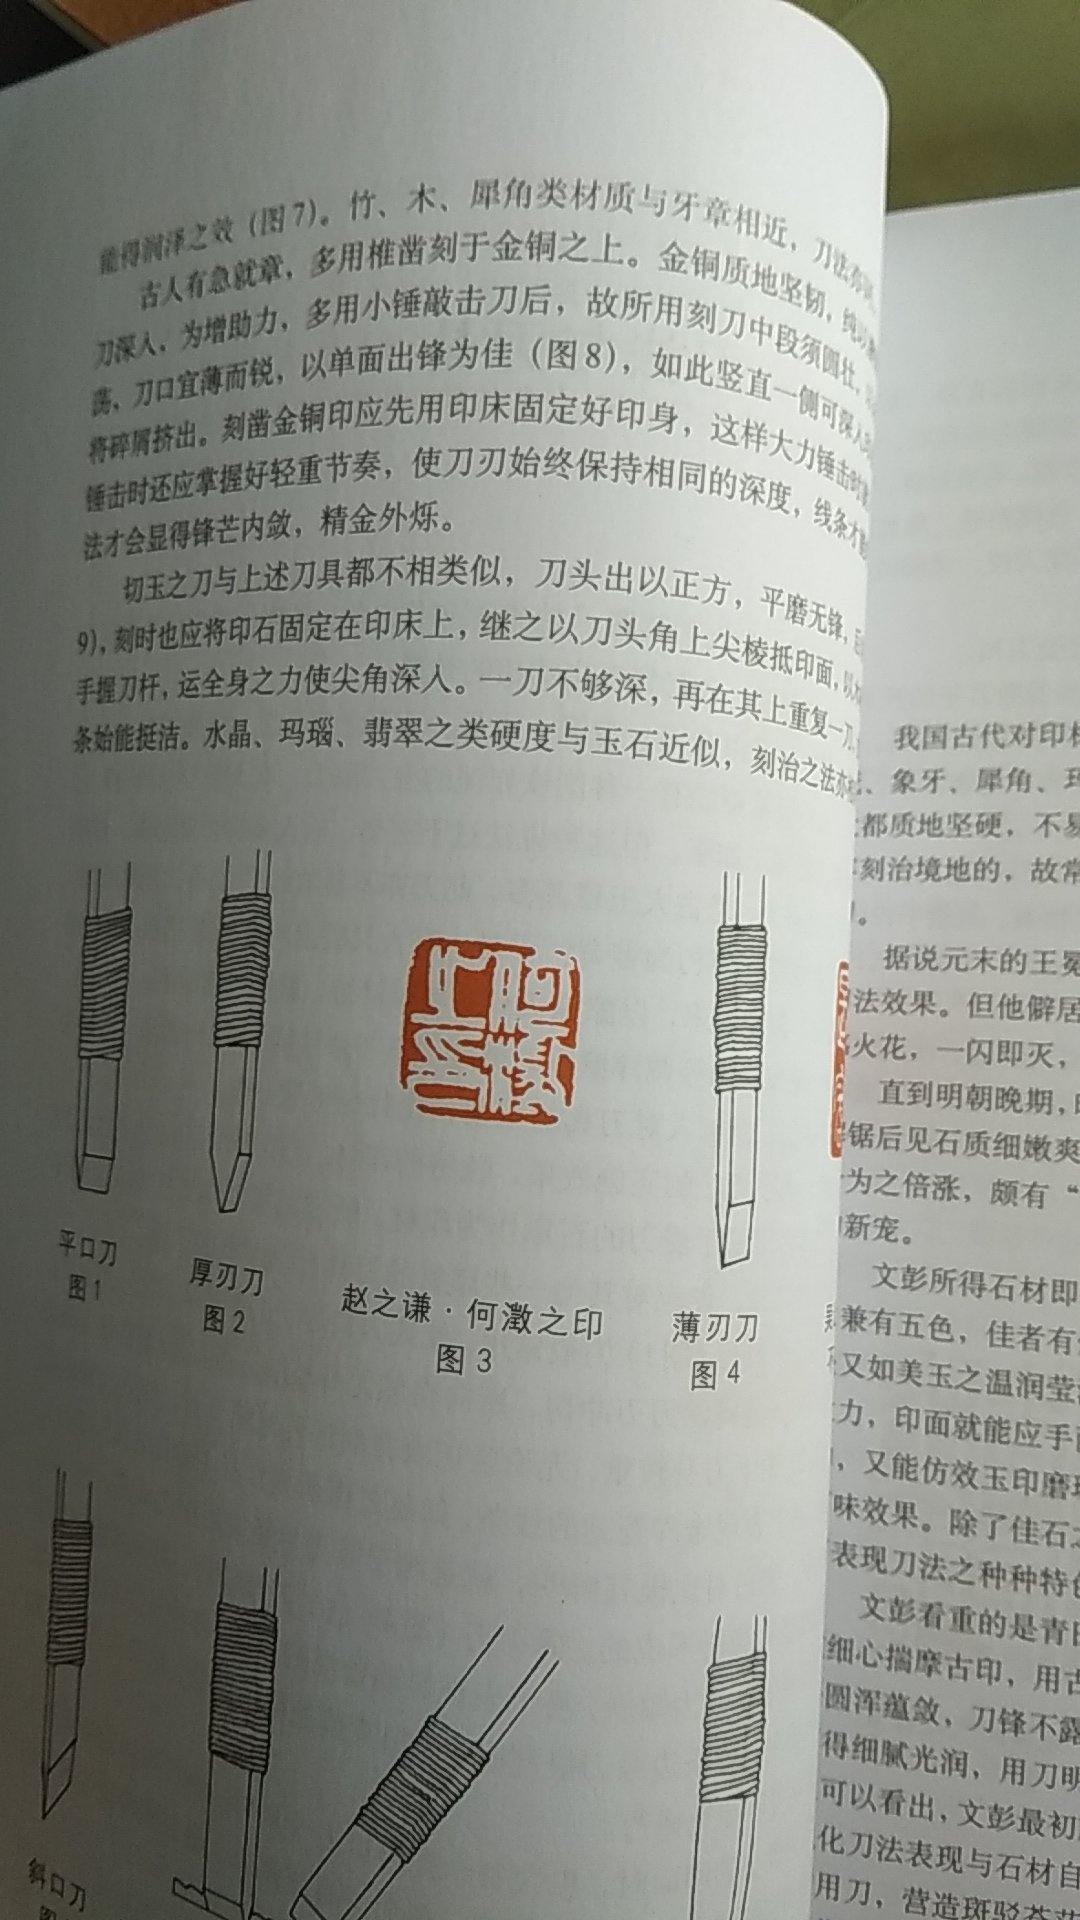 这个系列共四本，比较系统地讲解了篆刻的技法，对于篆刻爱好者来说是一套不错的工具书。